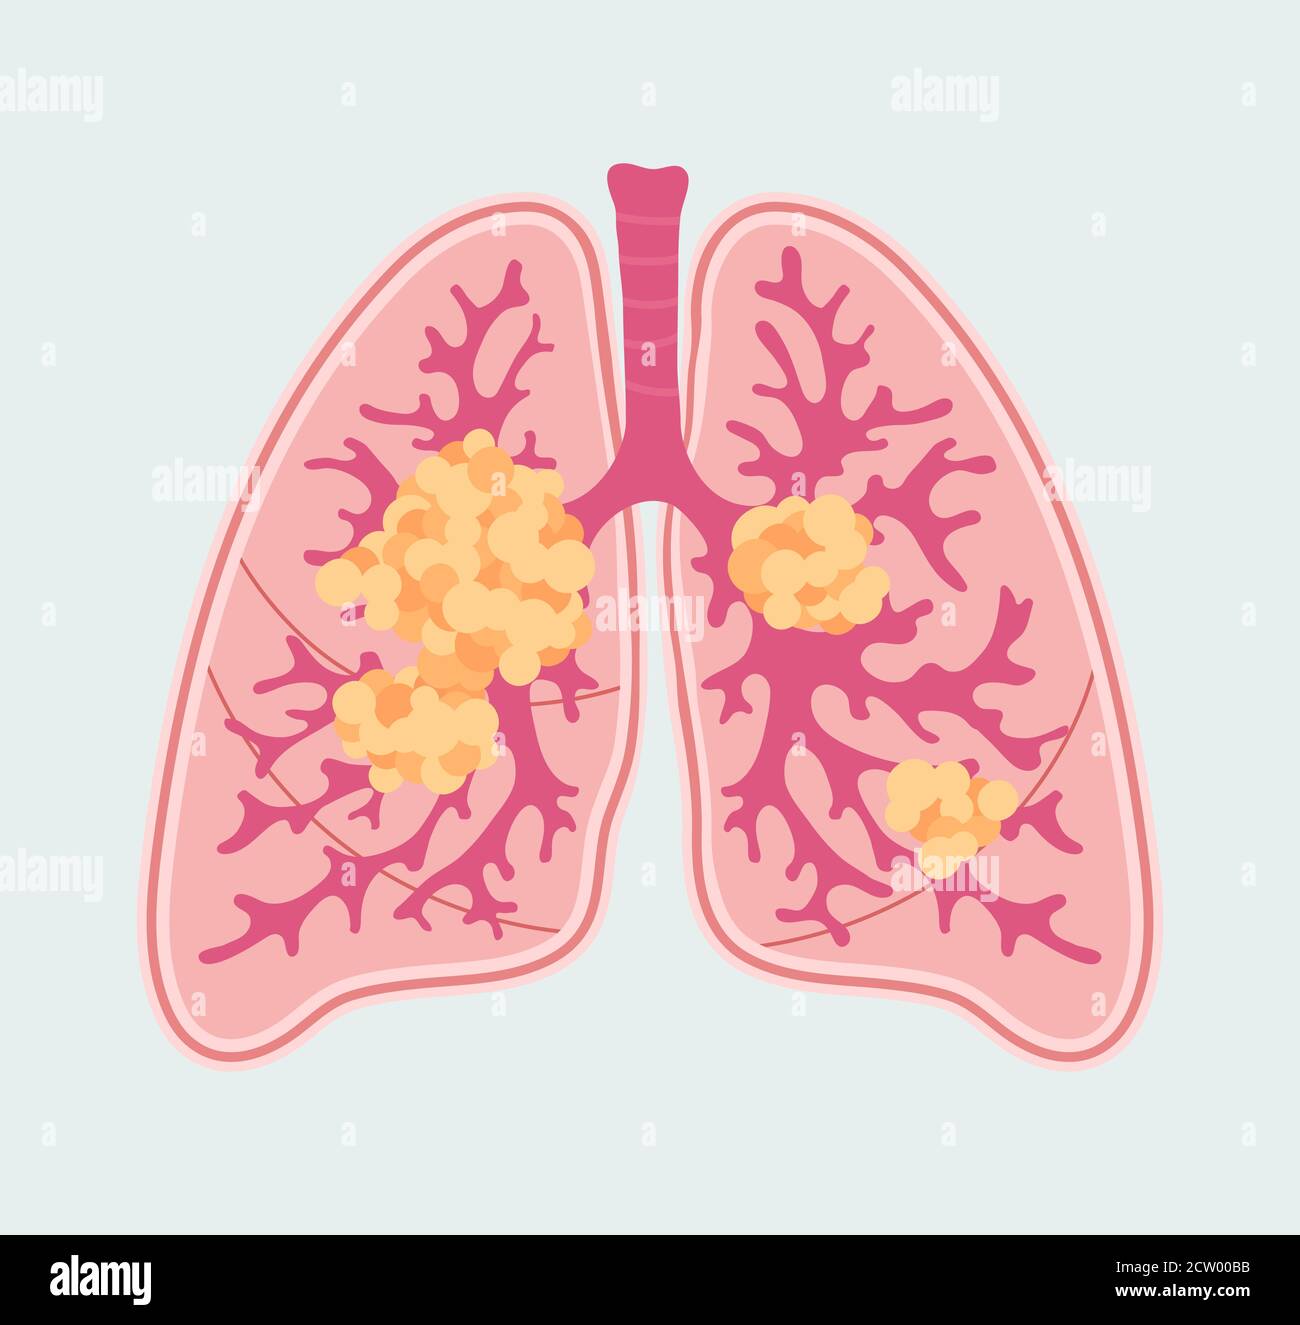 Programme convivial de cancer du poumon. Schéma anatomique de la tumeur et des métastases dans les organes respiratoires Illustration de Vecteur